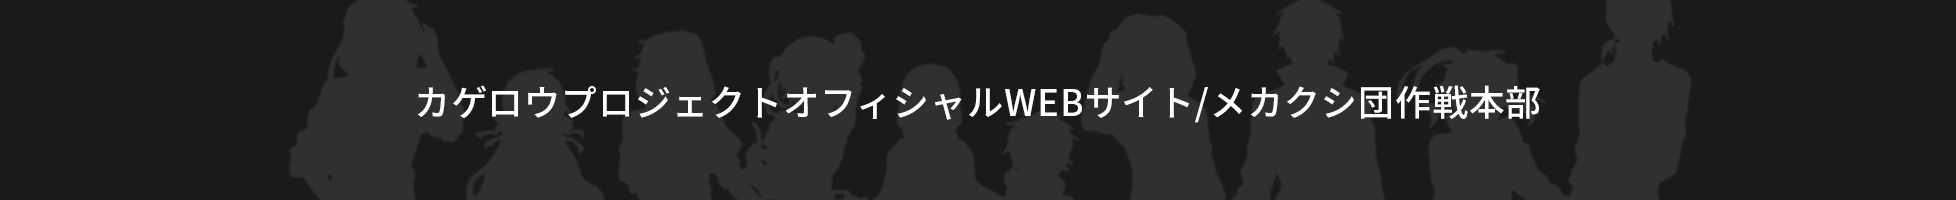 カゲロウプロジェクトオフィシャルWEBサイト/メカクシ団作戦本部